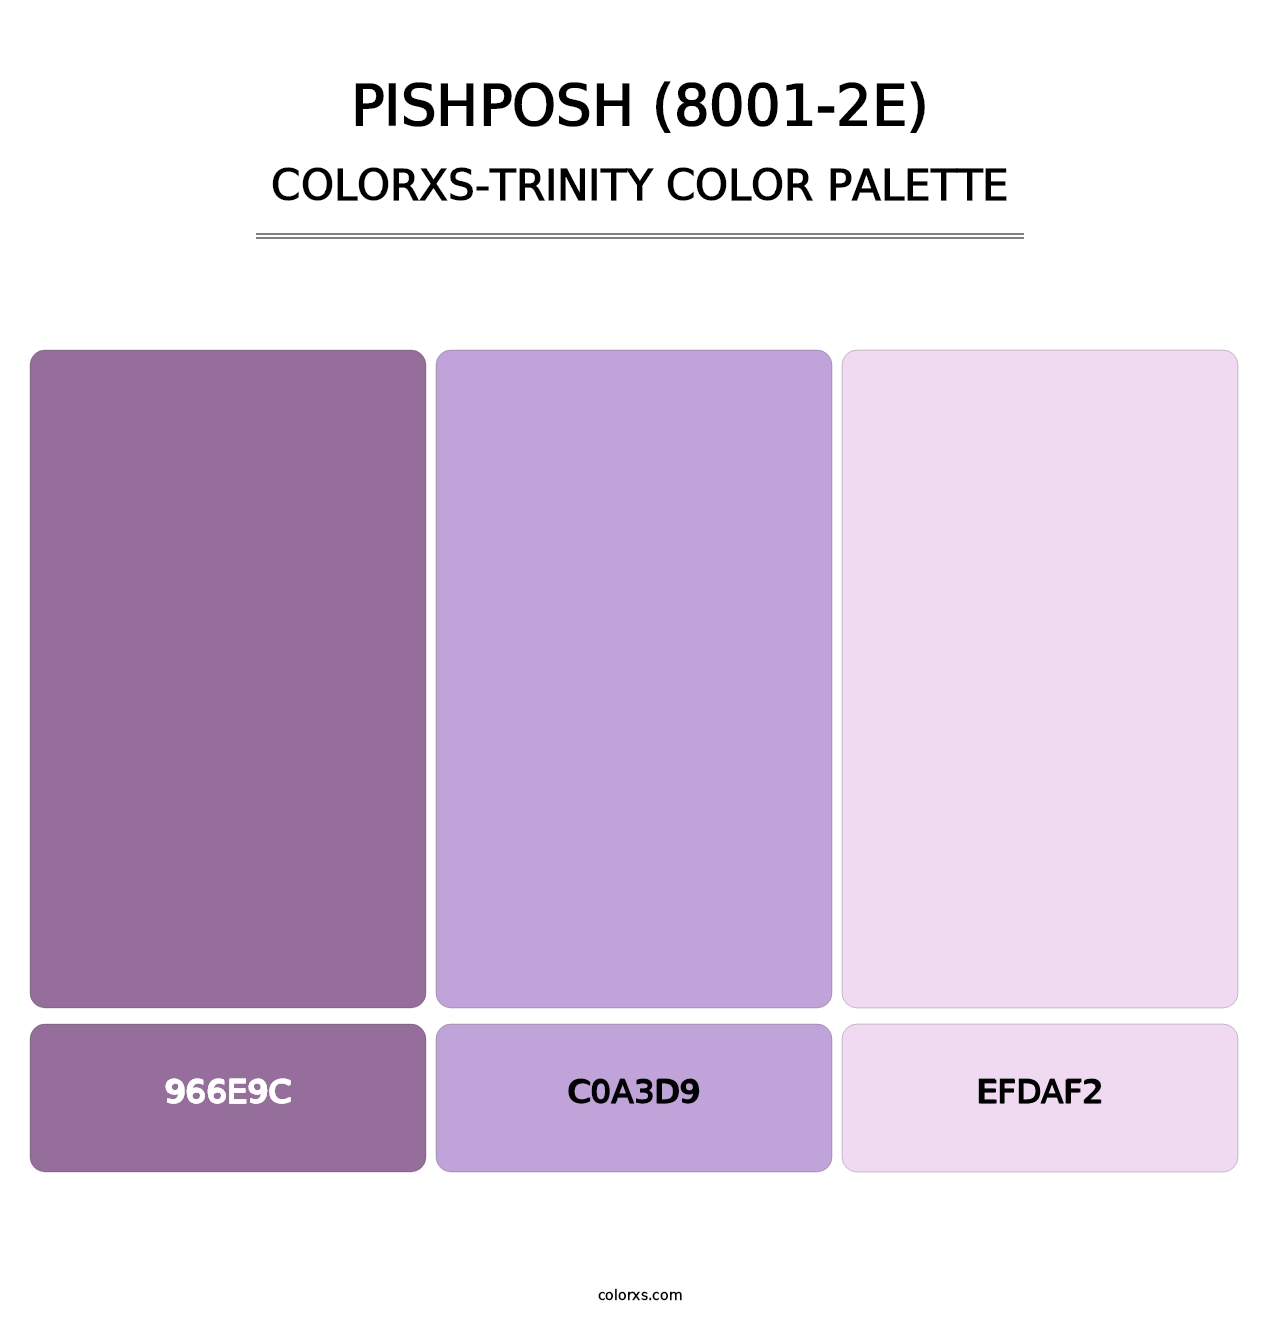 Pishposh (8001-2E) - Colorxs Trinity Palette